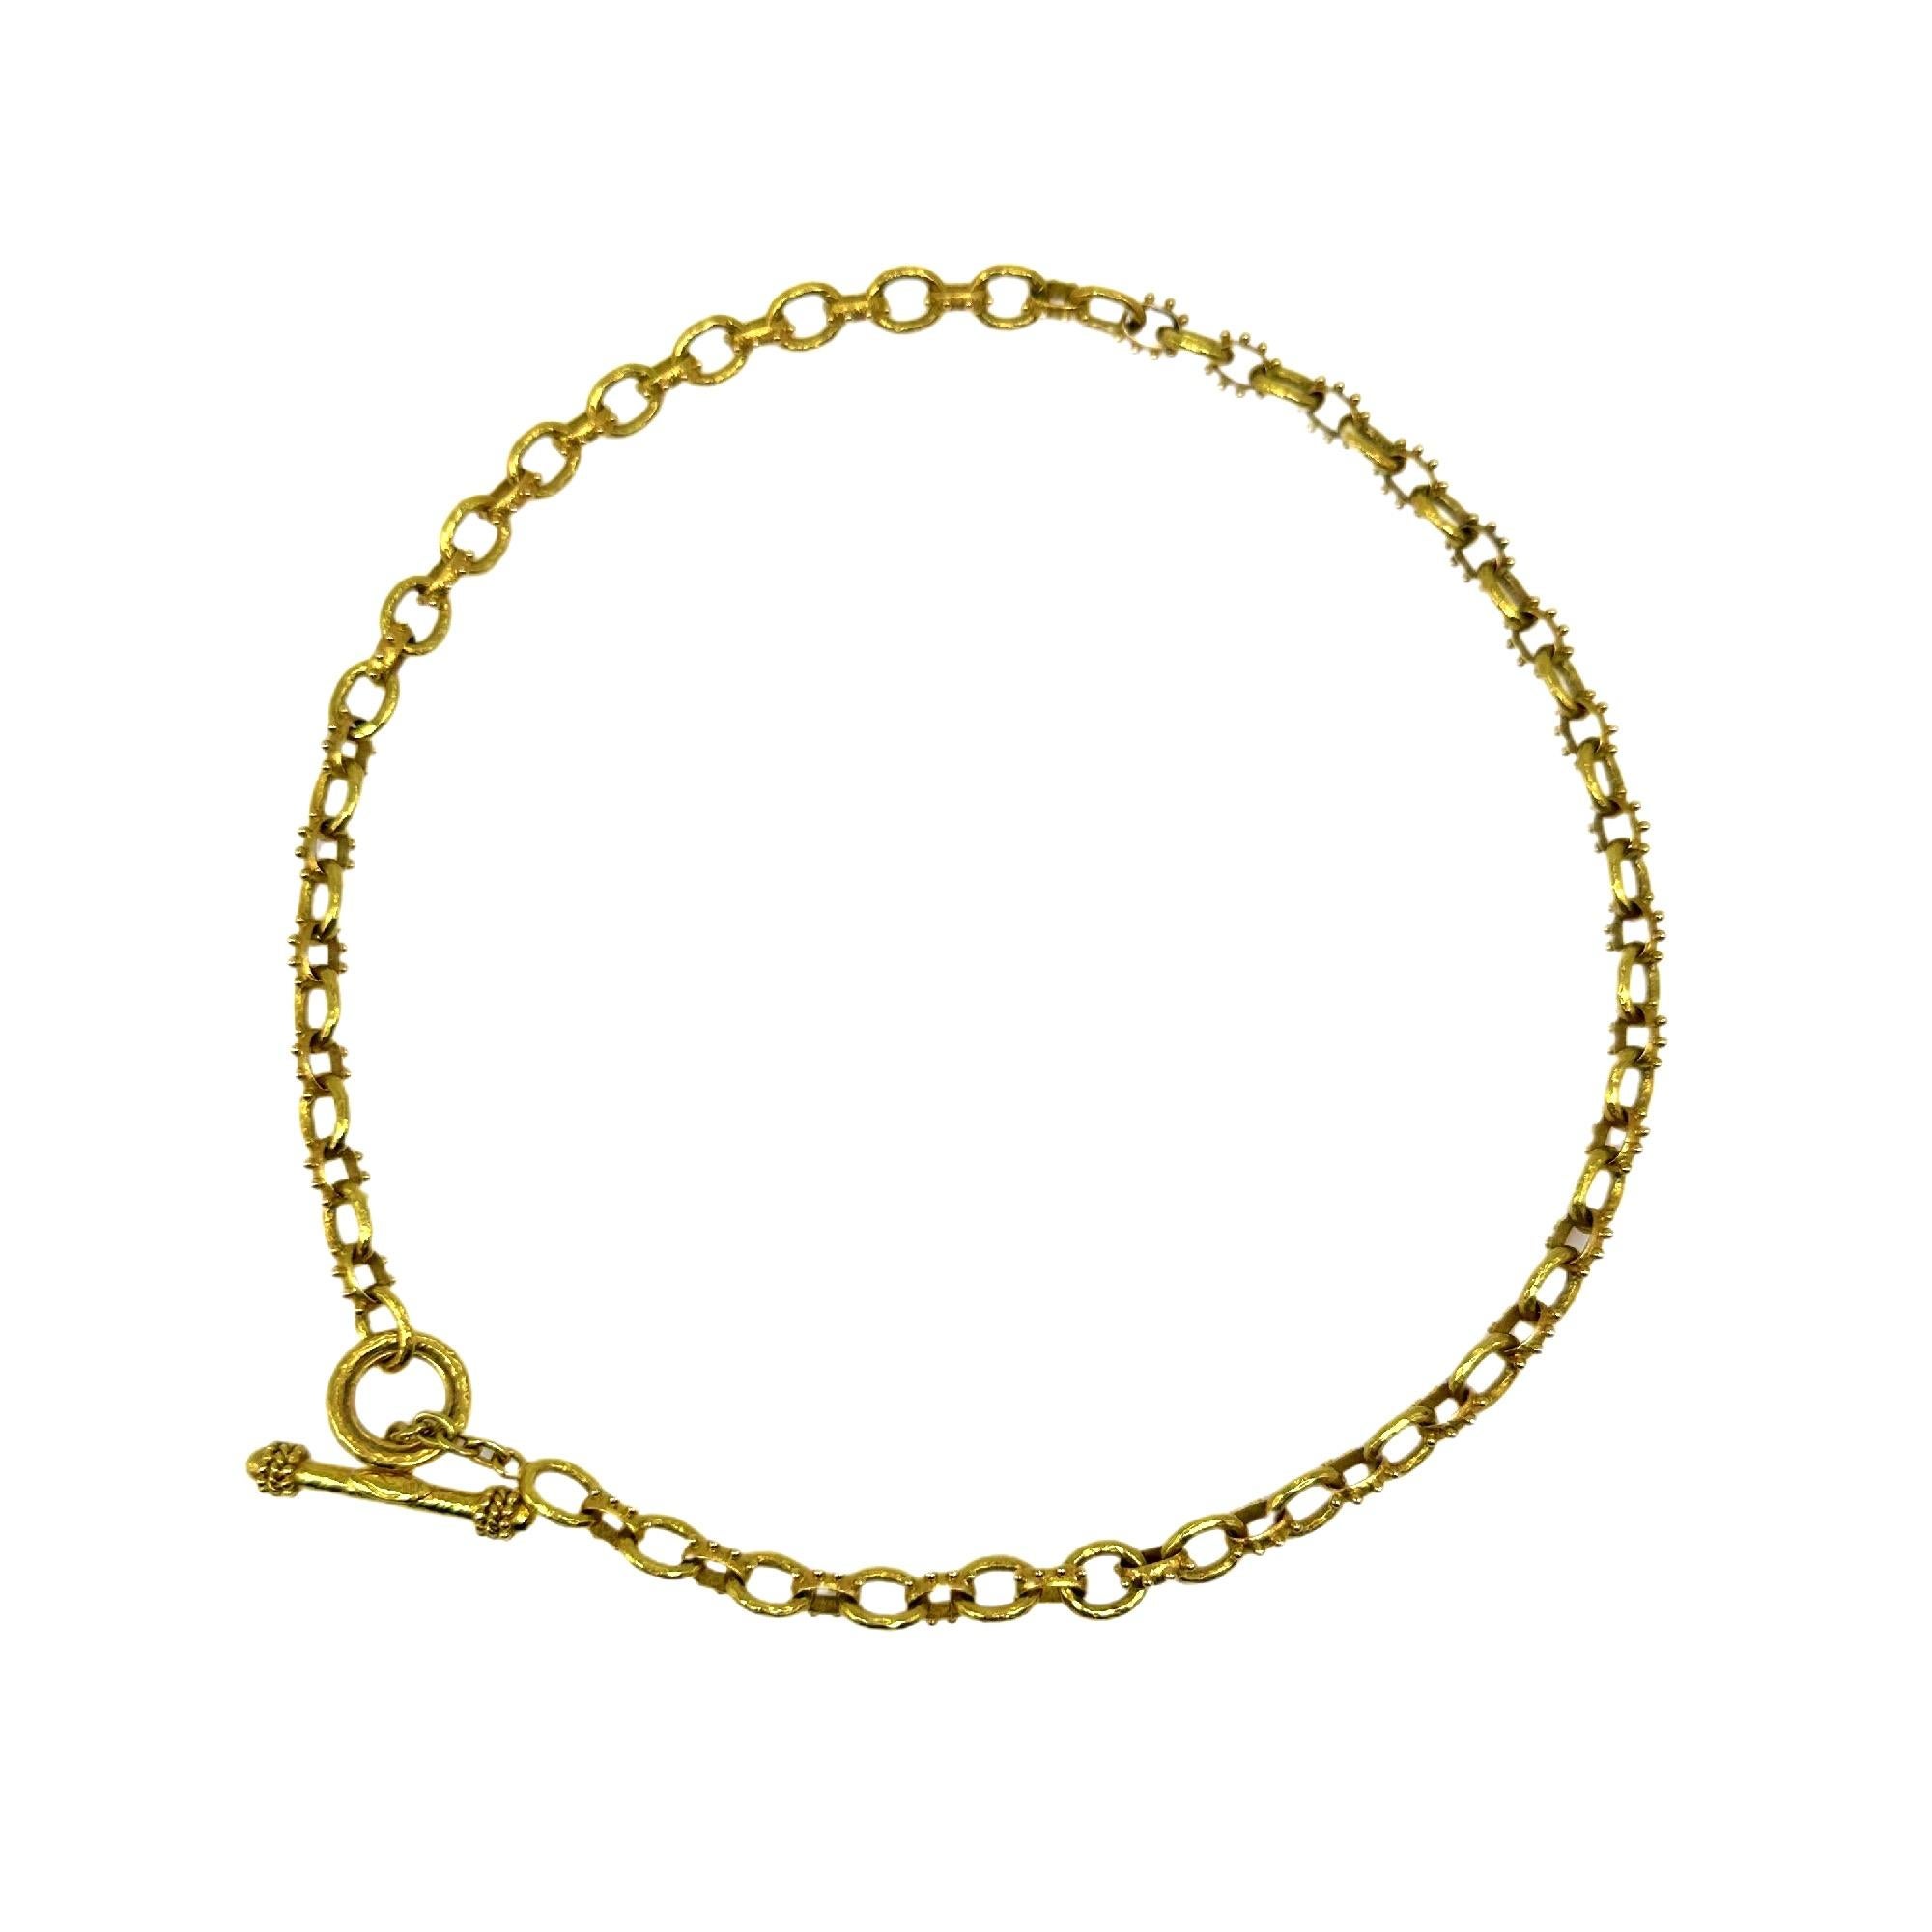 Elizabeth Locke Spiked Link Hammered Gold Toggle Necklace 19k YG For Sale 3